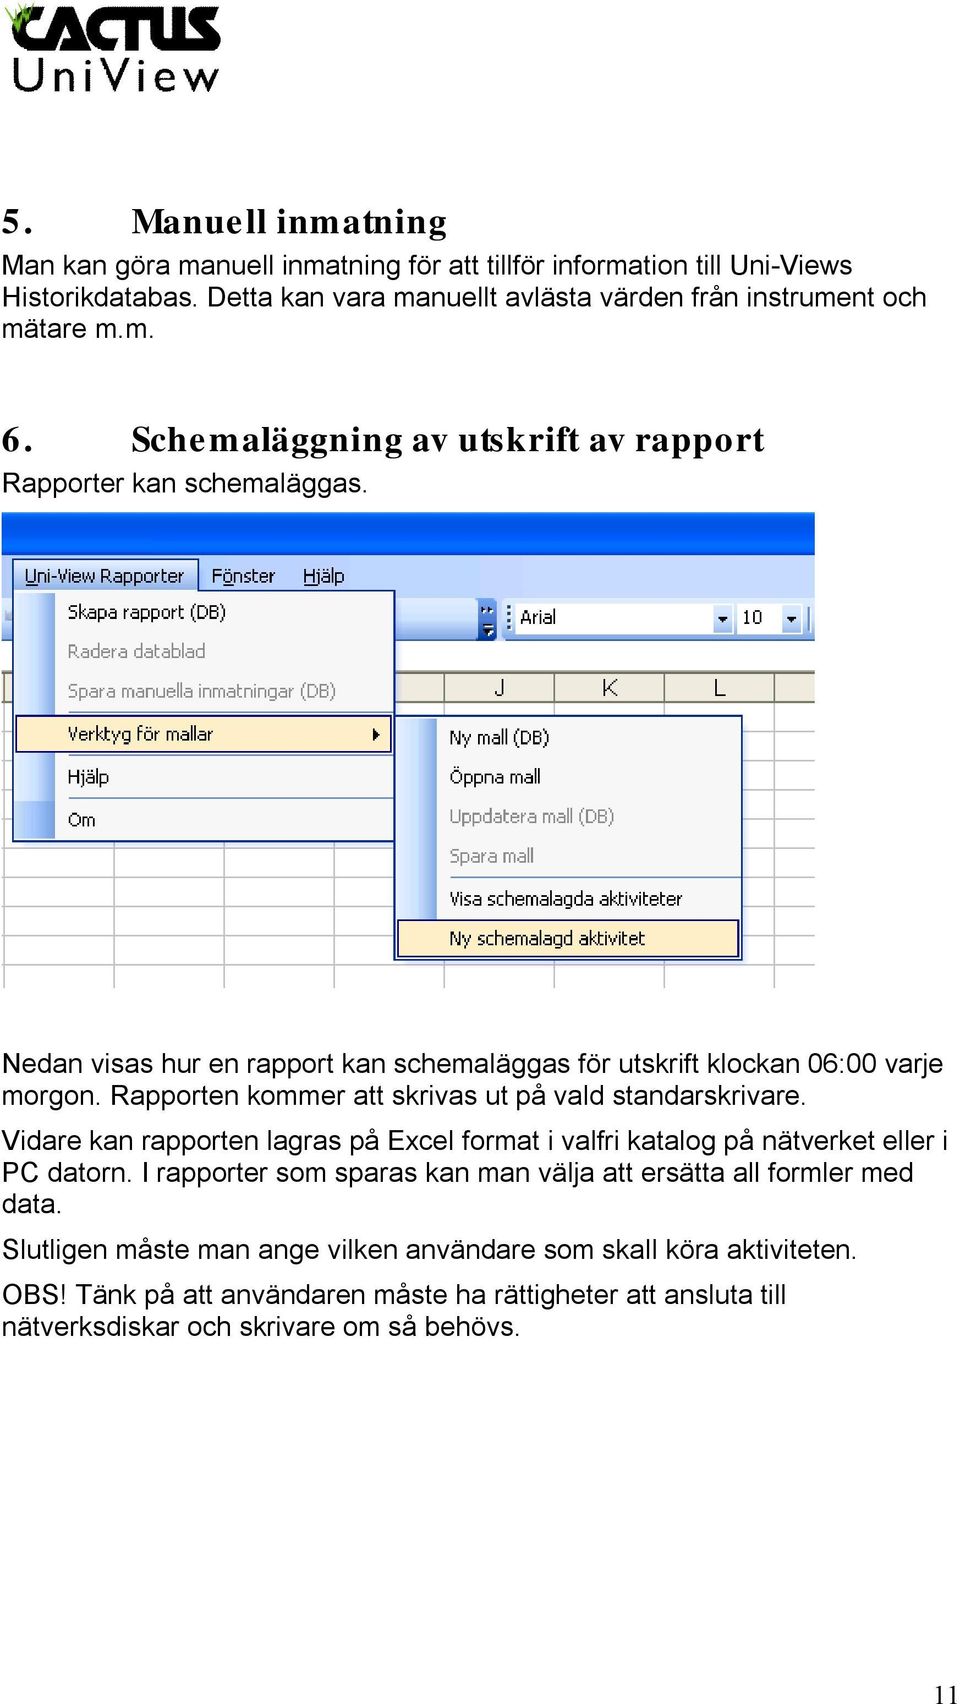 Rapporten kommer att skrivas ut på vald standarskrivare. Vidare kan rapporten lagras på Excel format i valfri katalog på nätverket eller i PC datorn.